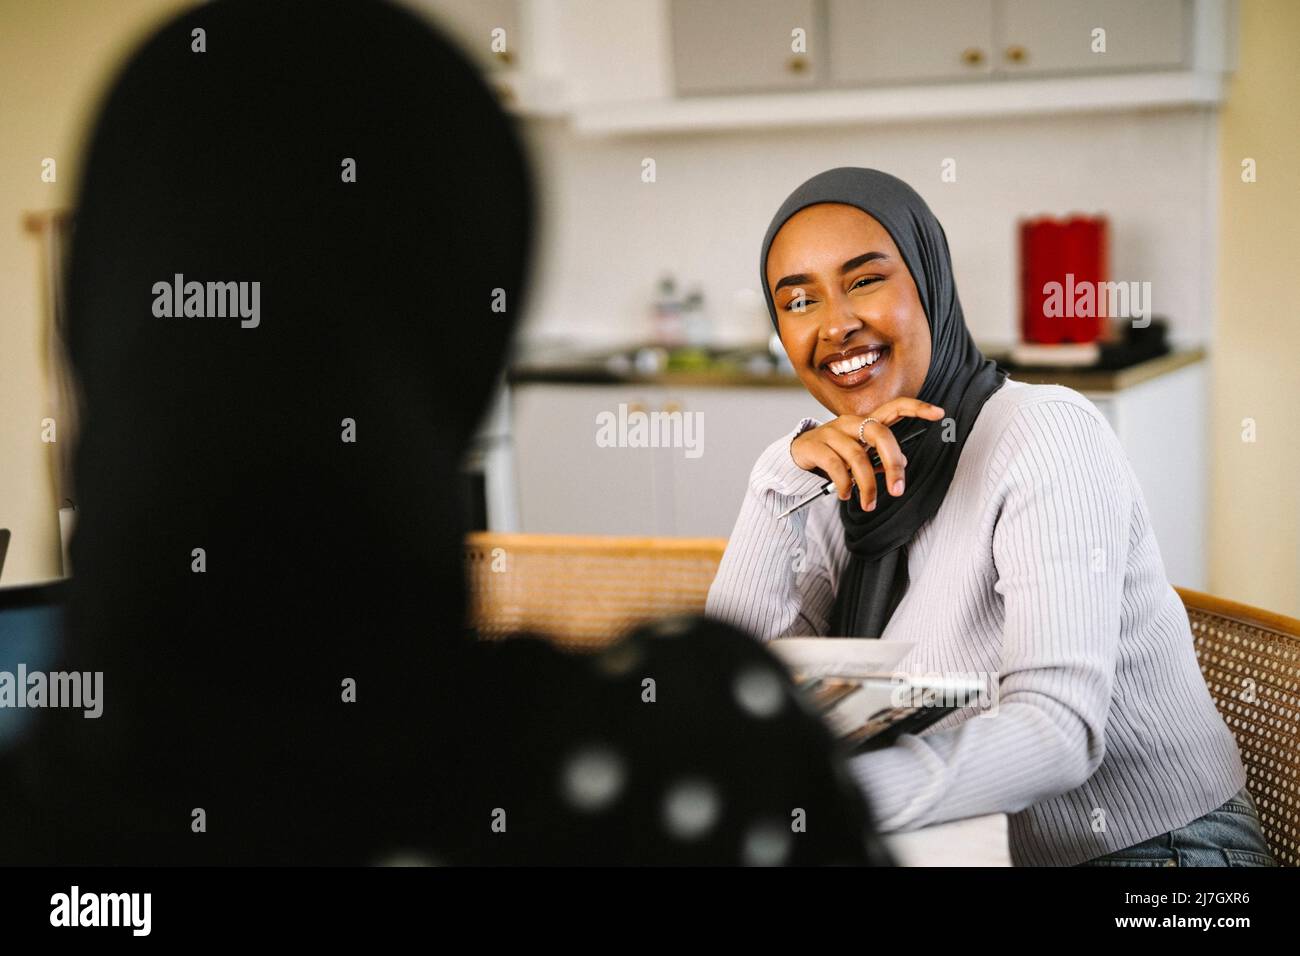 Glückliche junge Frau mit Hijab im Gespräch mit einem Freund zu Hause Stockfoto